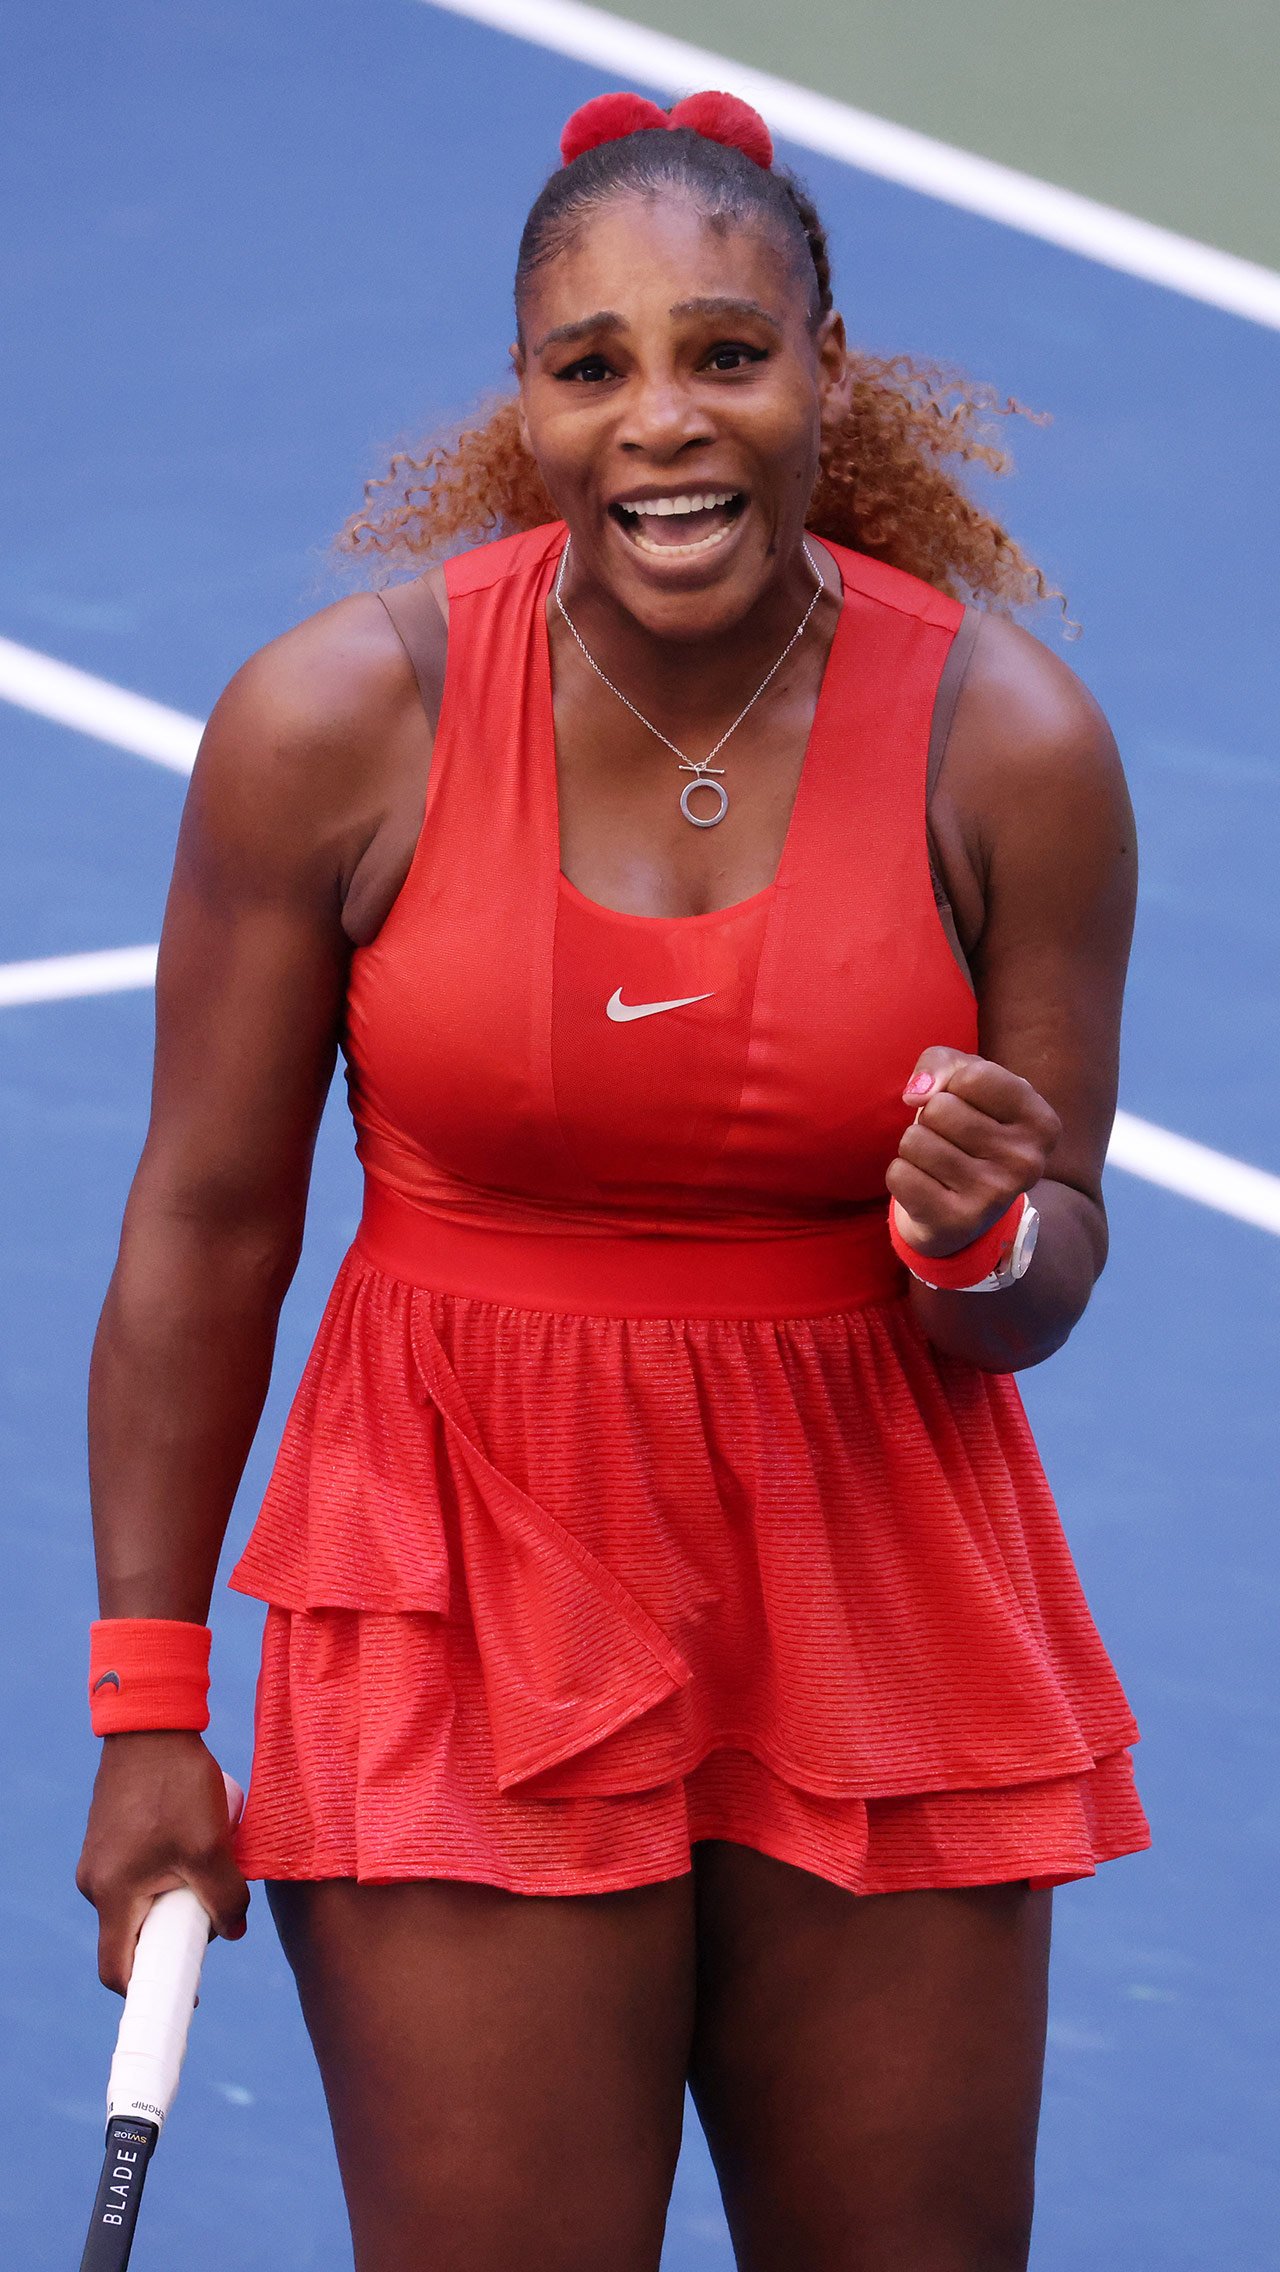 Серена Уильямс — четвёртая по богатству в теннисе после Роджера Федерера, Новака Джоковича и Рафаэля Надаля и первая среди женщин.